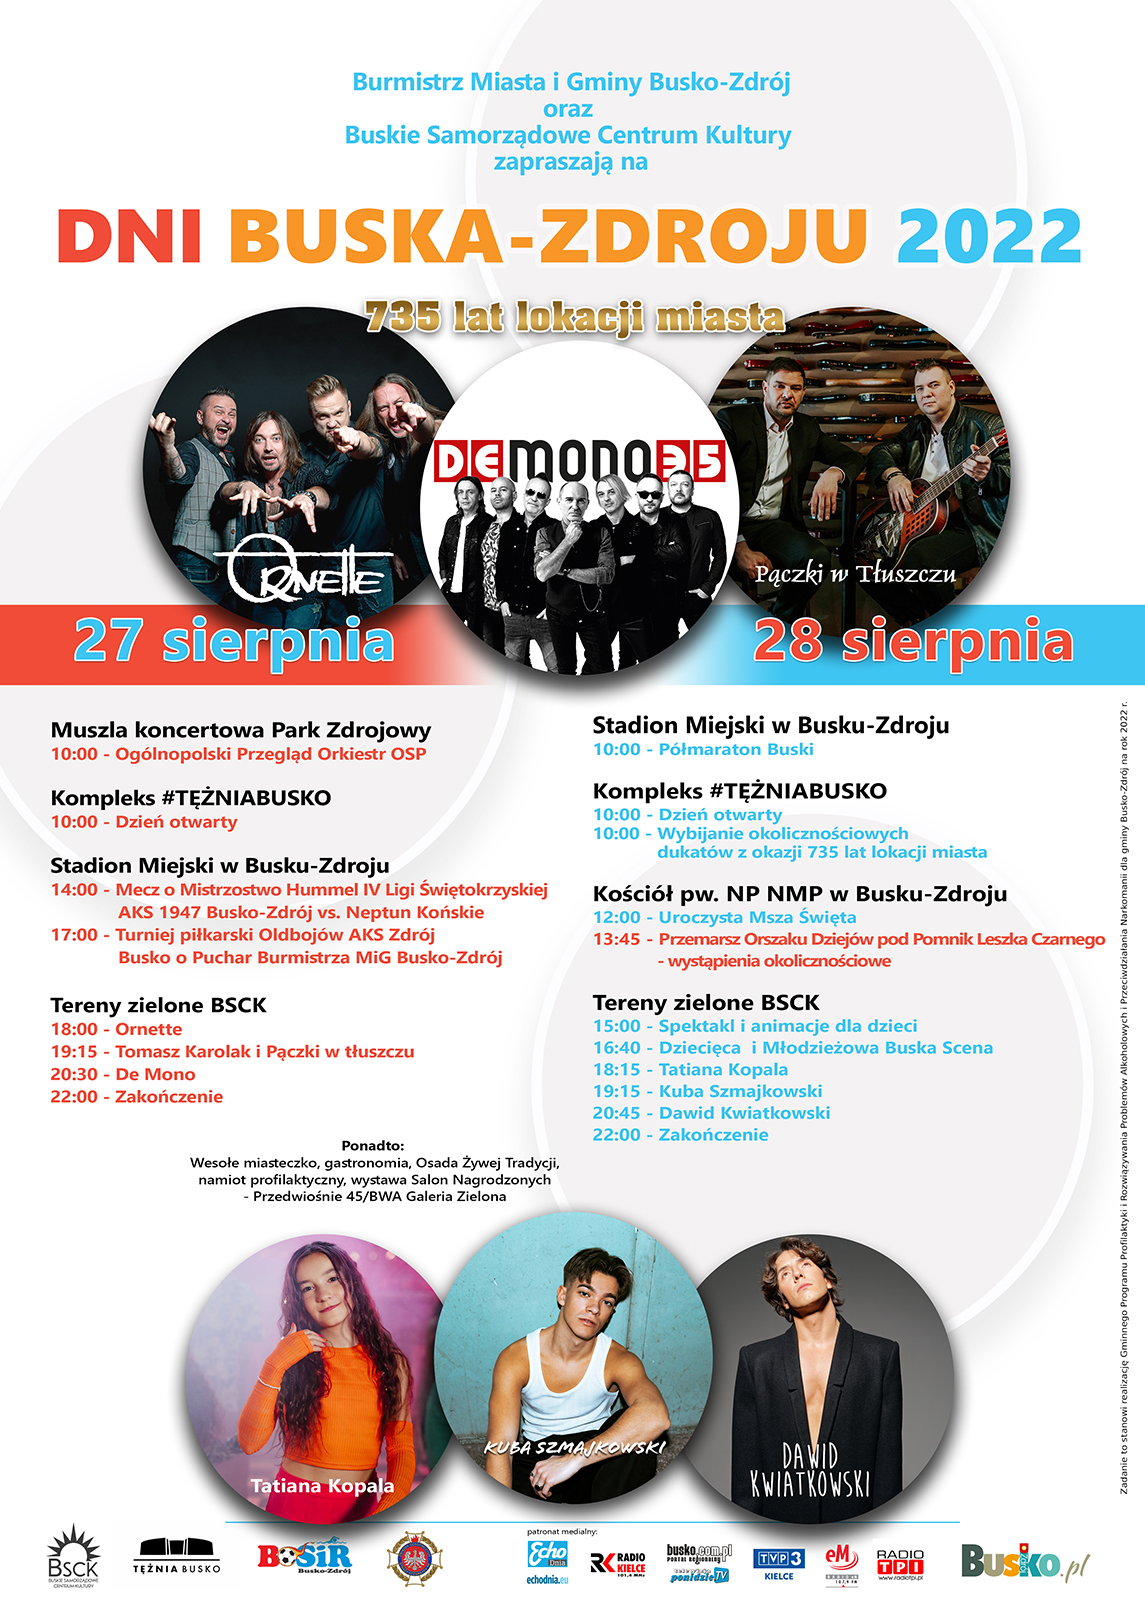 plakat promujący Dni Buska 2022, przedstawia program imprezy i fotografie wykonawców